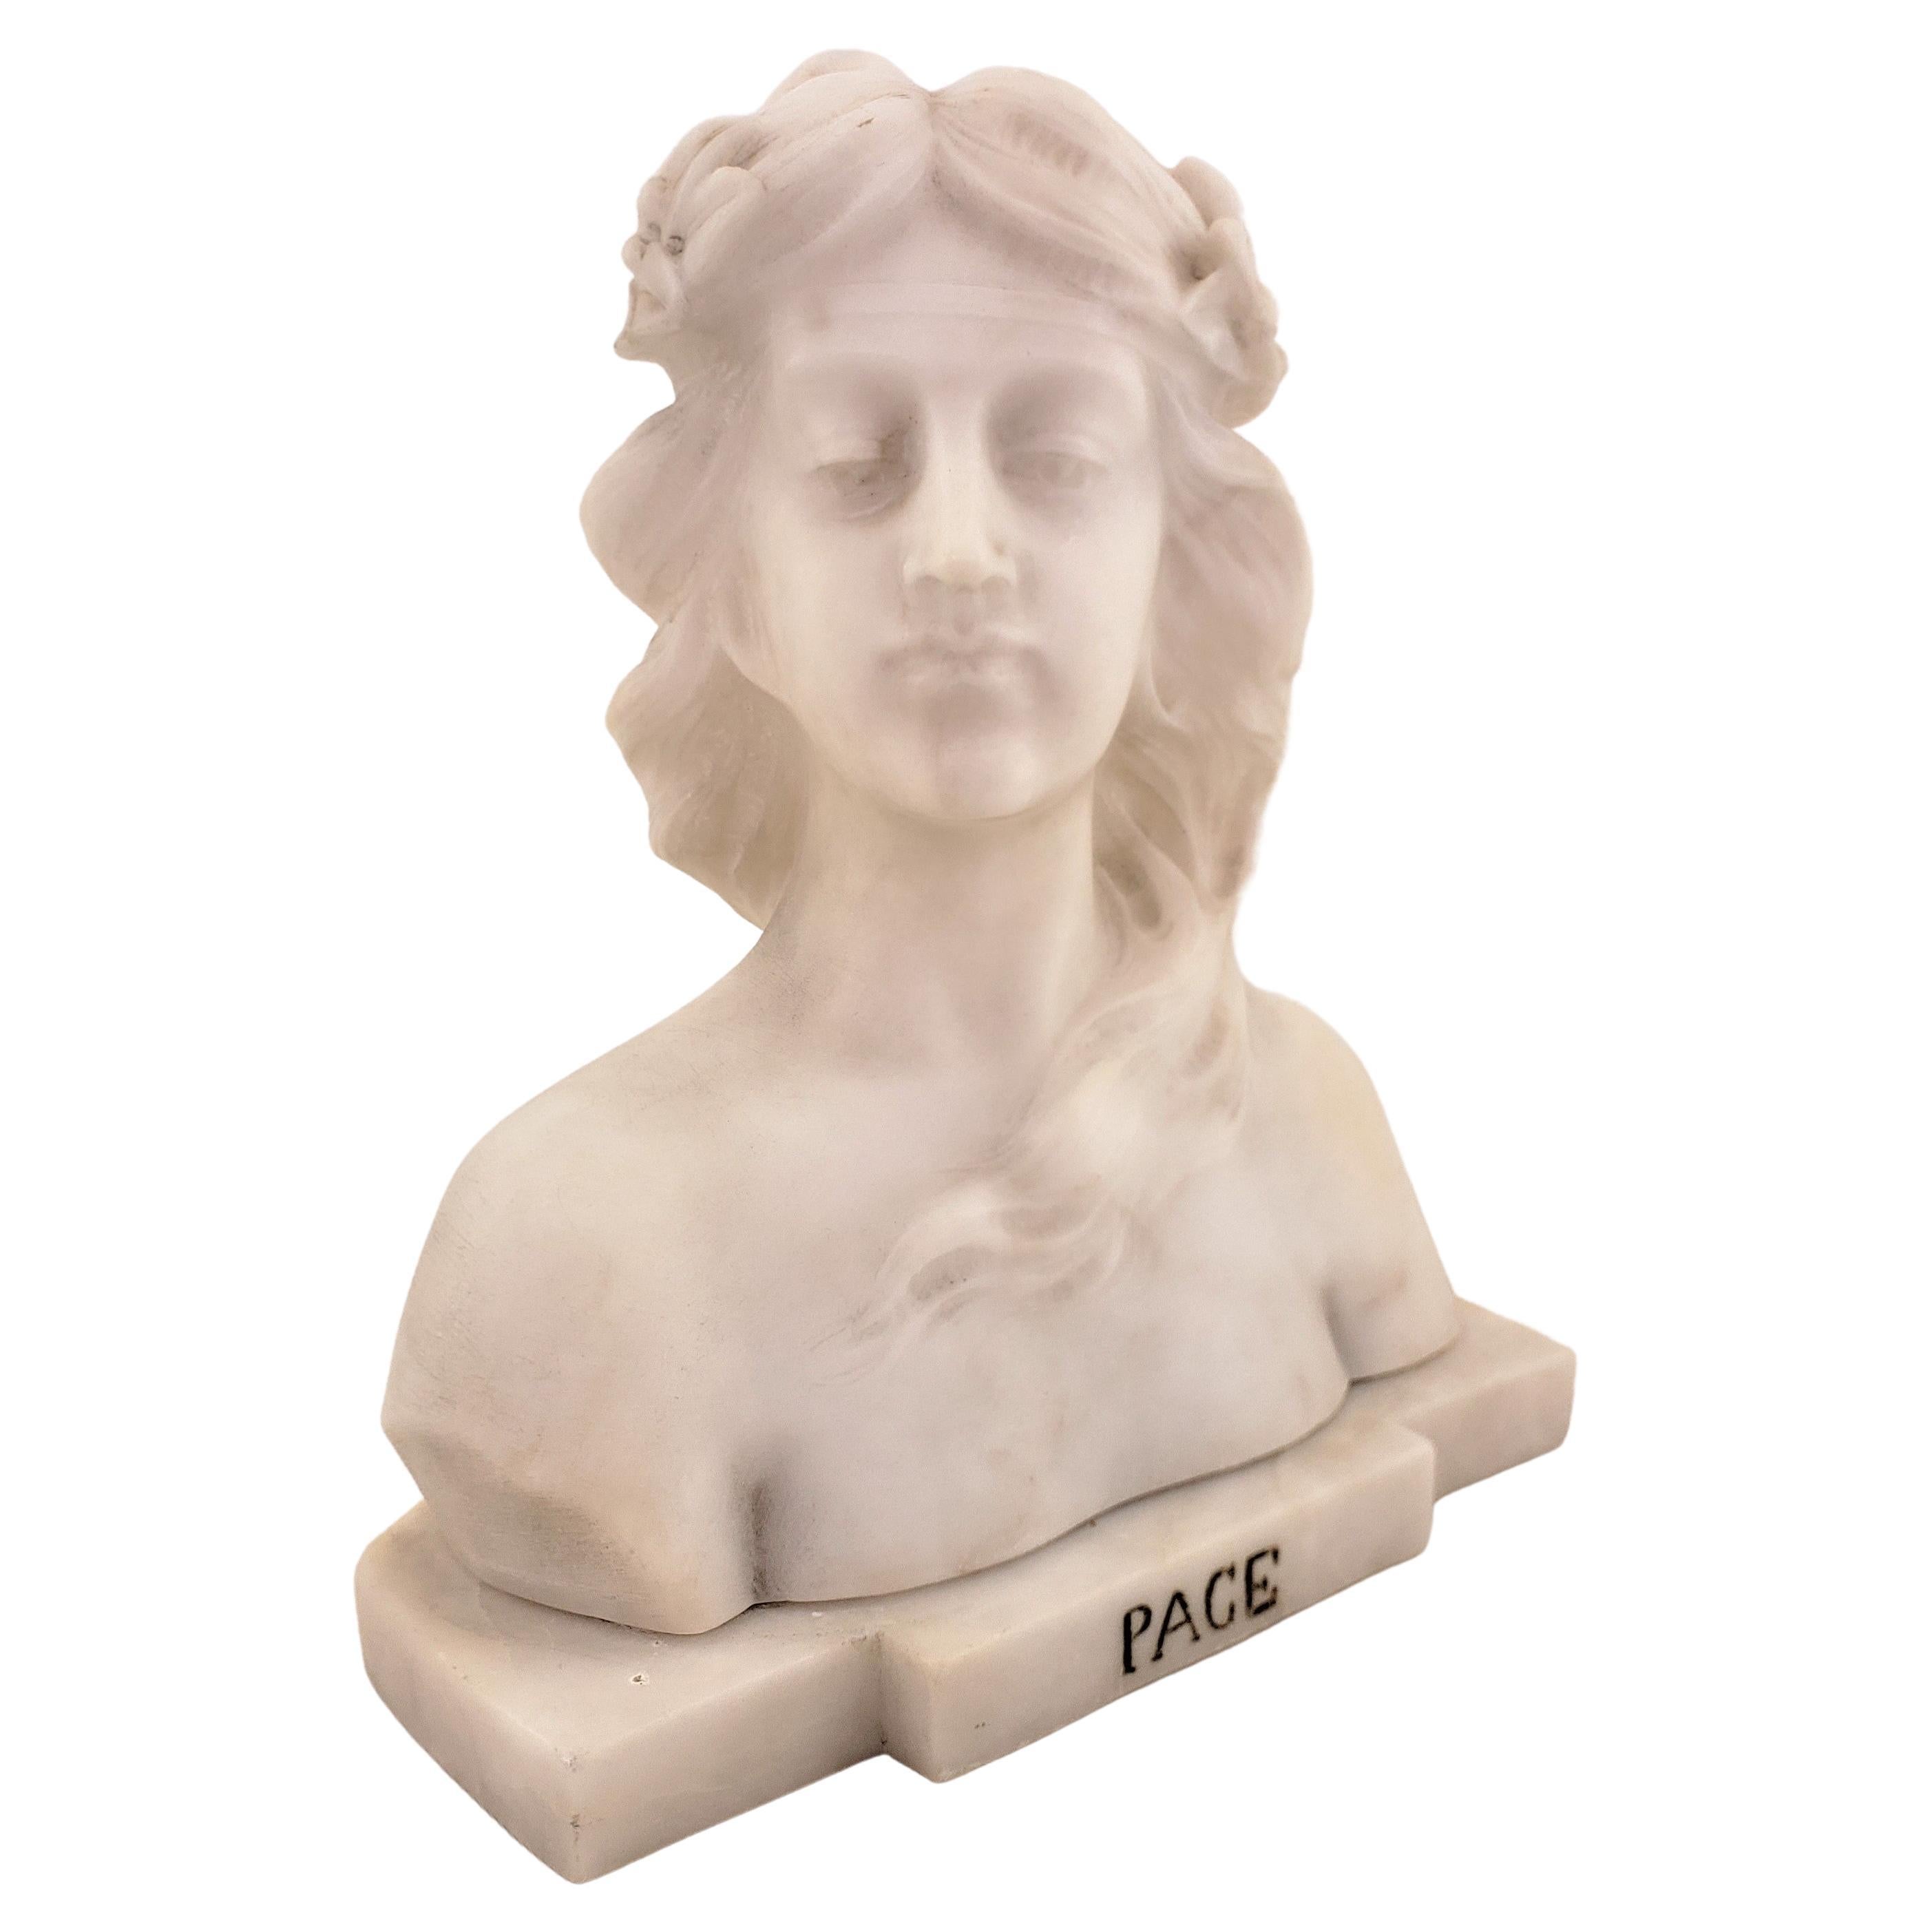 Signierte antike Büste oder Skulptur einer jungen weiblichen „Pace“ aus weißem Marmor, E. Zocchi